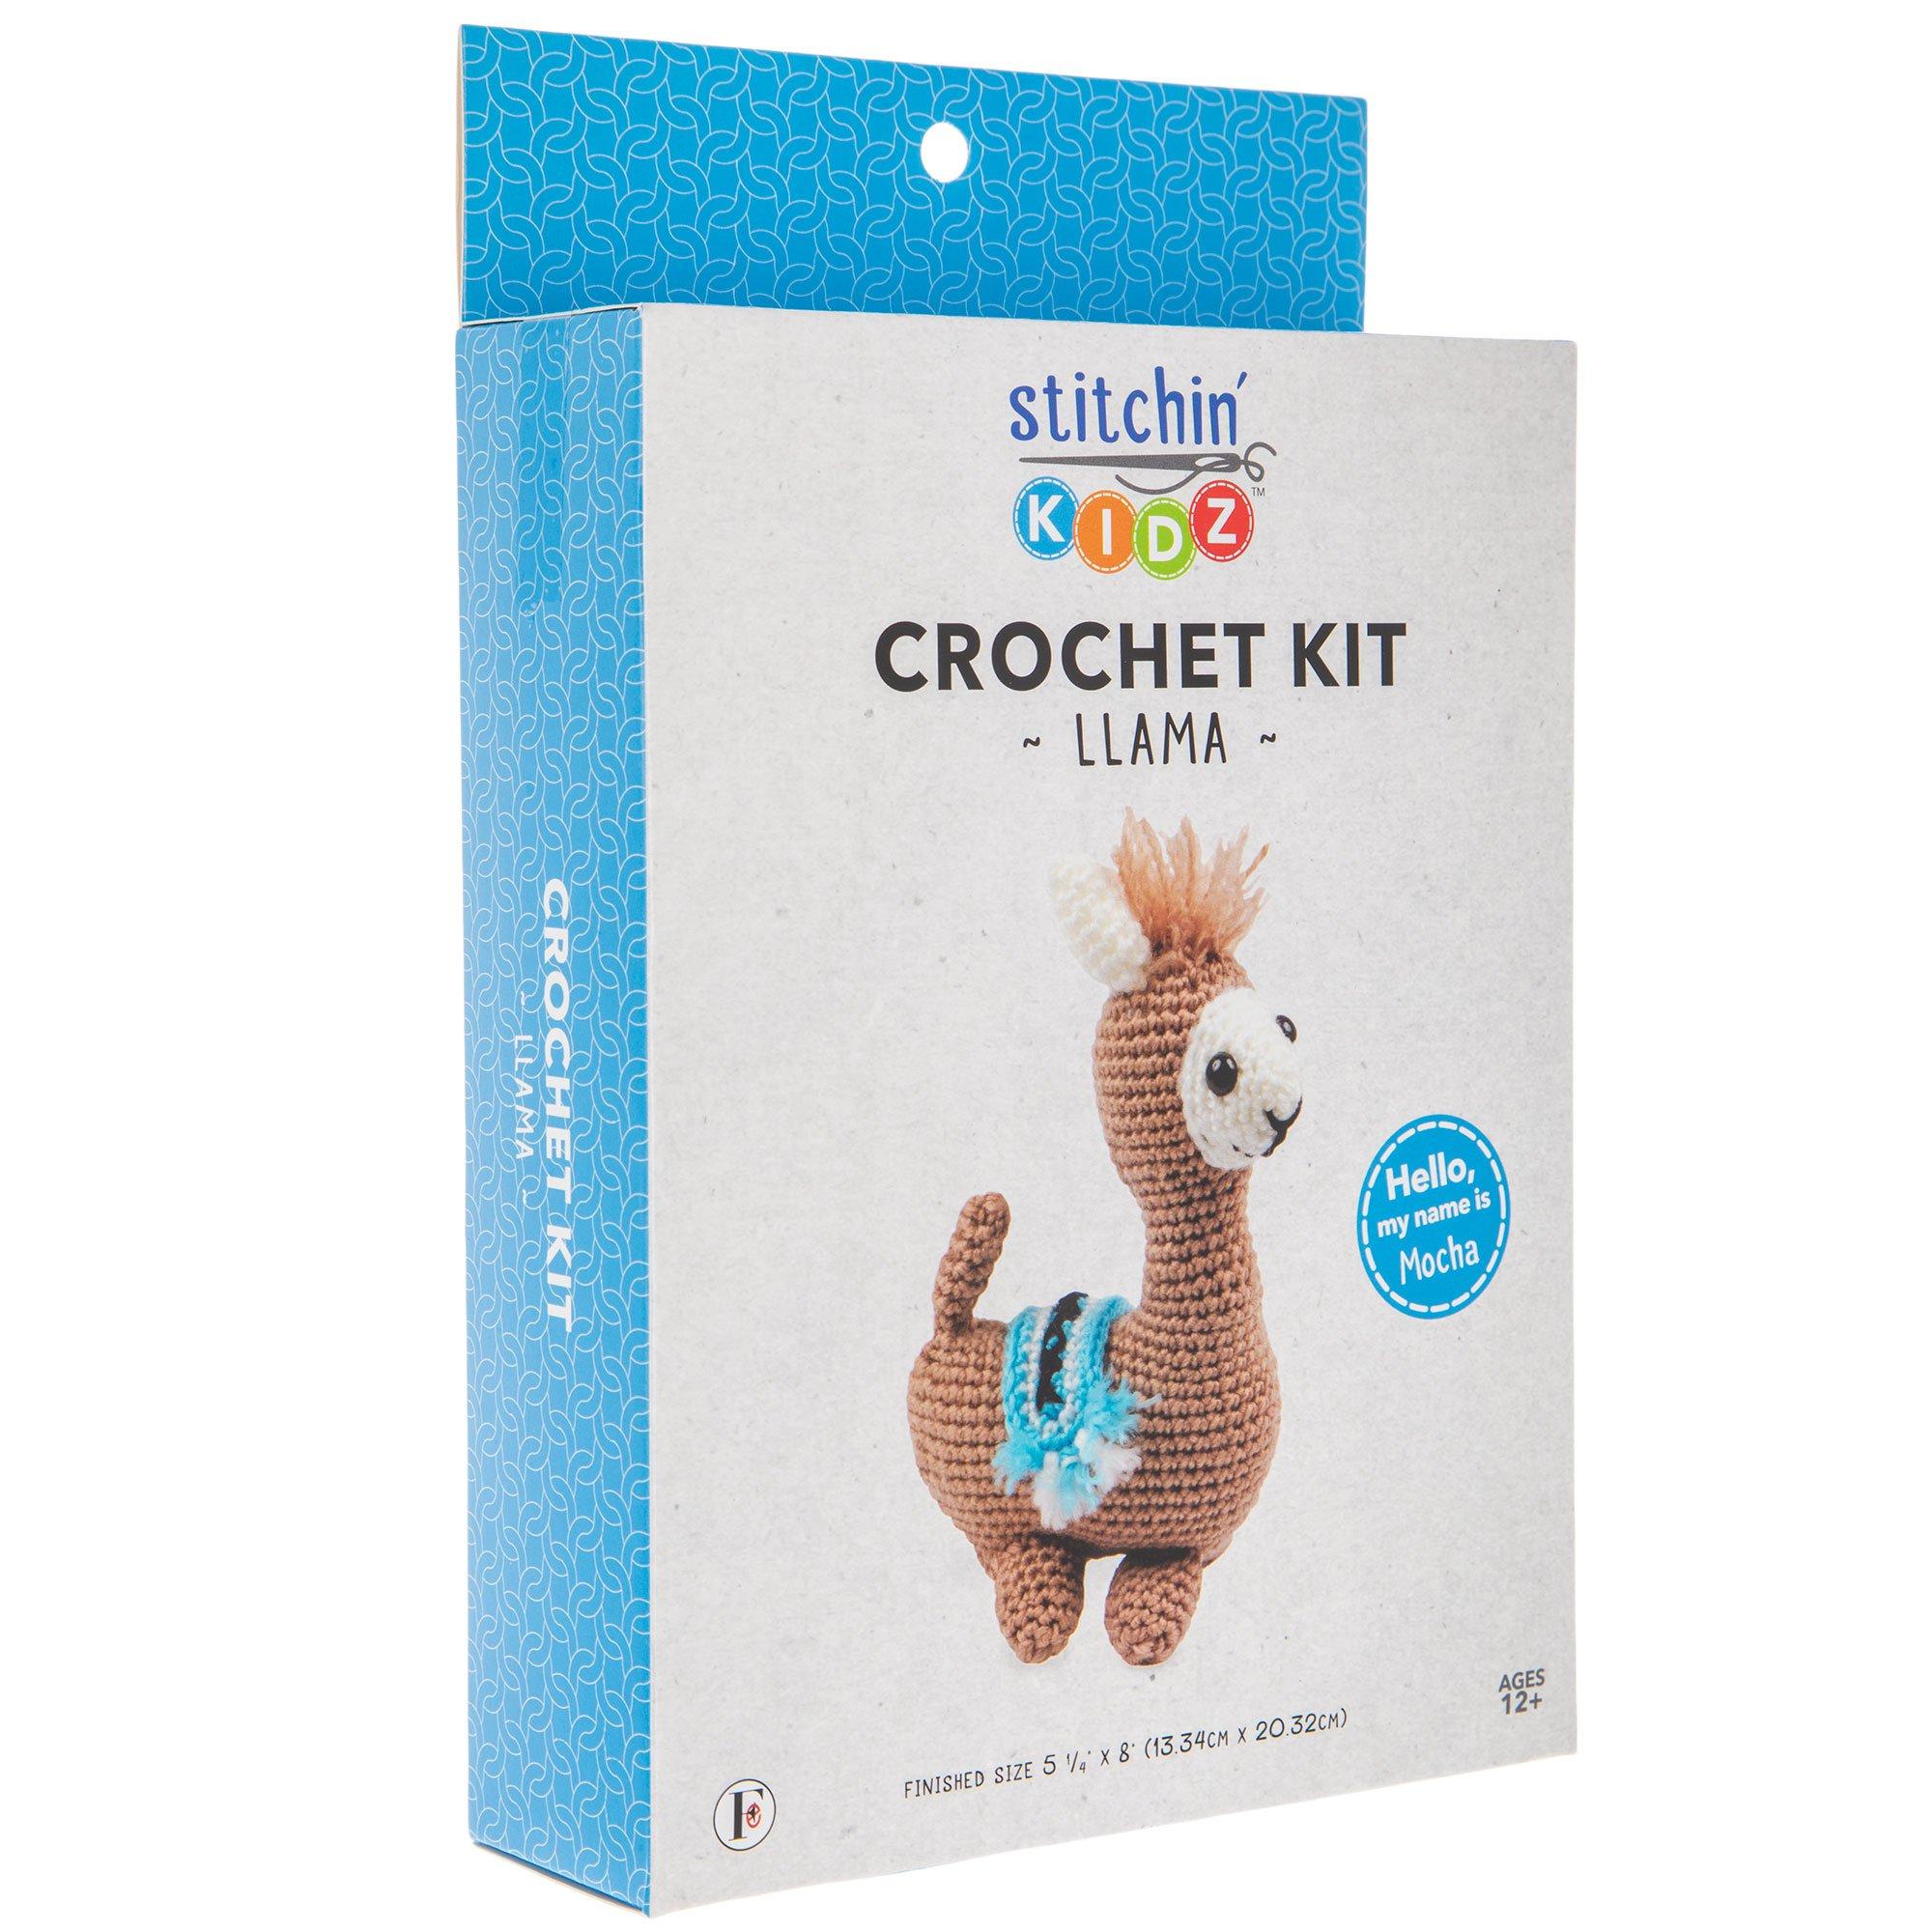 Leisure Arts Little Crochet Friend Kit SM Bunny